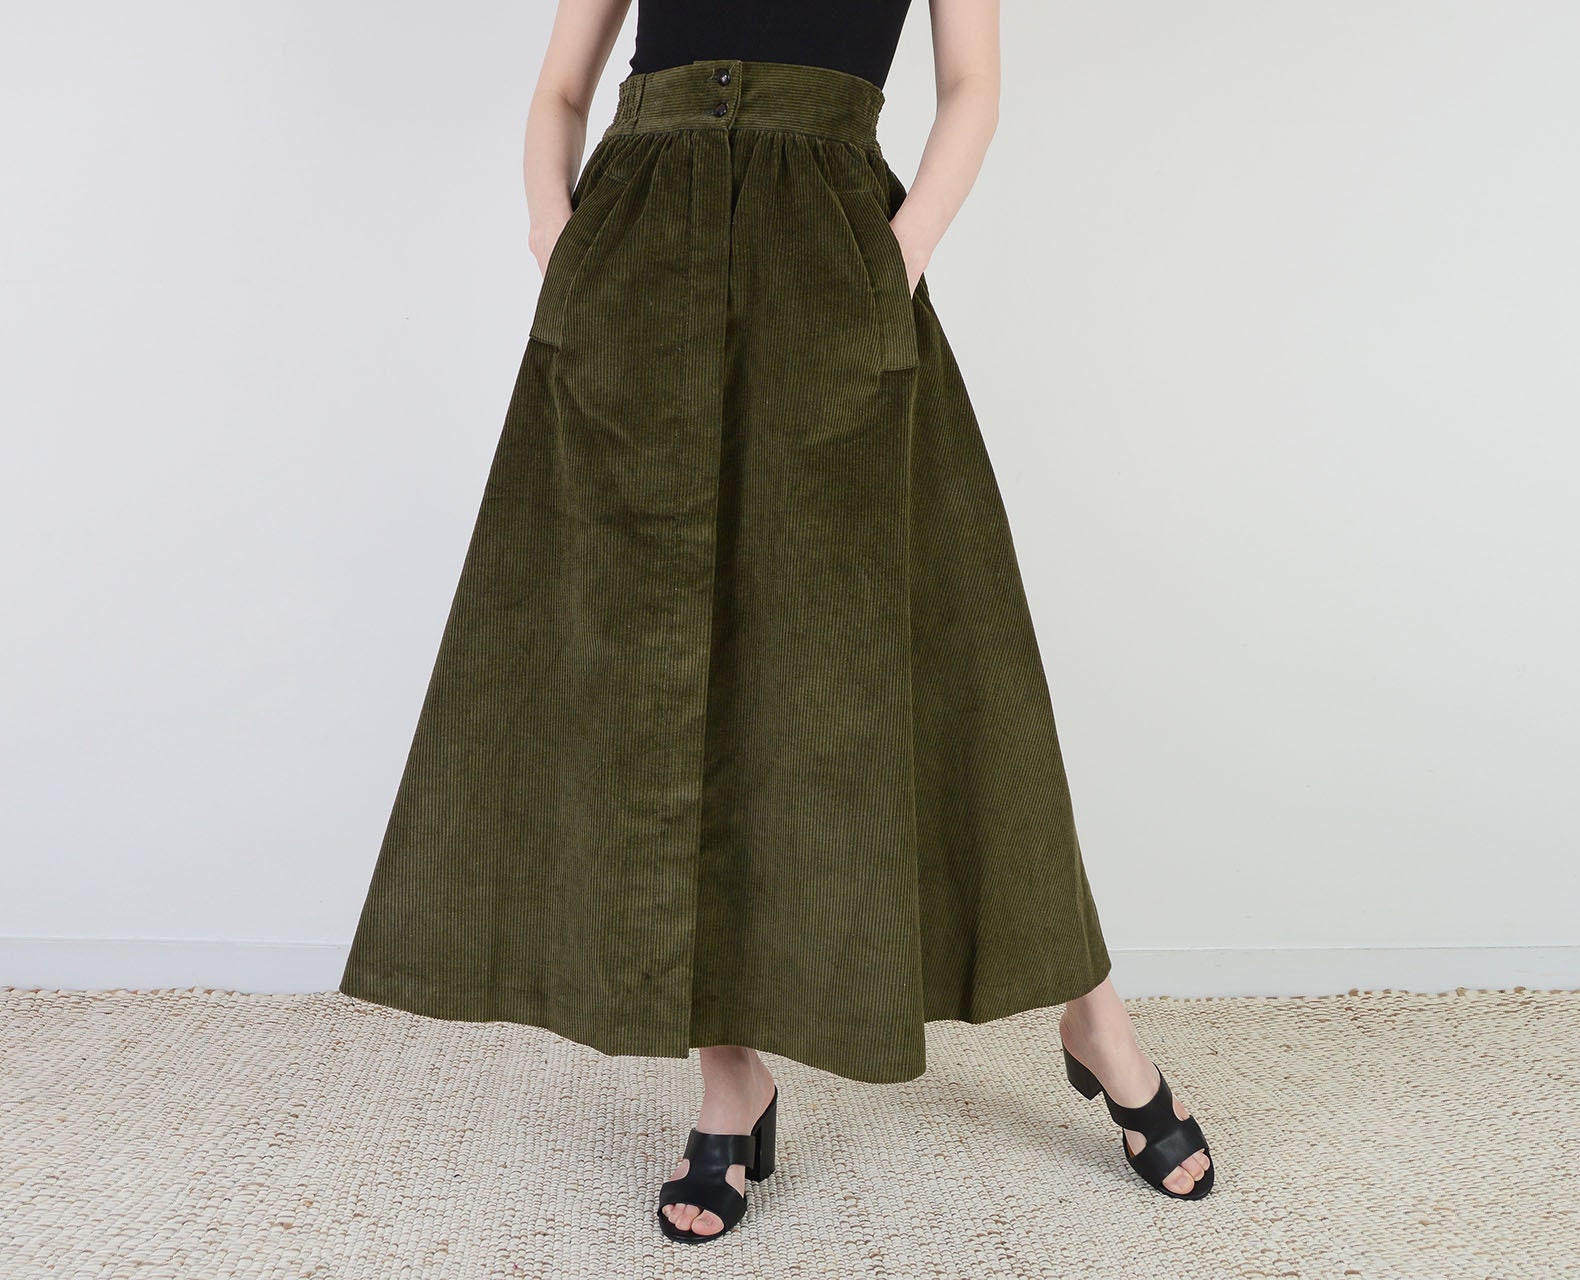 Vintage s Olive Green Corduroy Skirt High Waist Full Ankle   Etsy